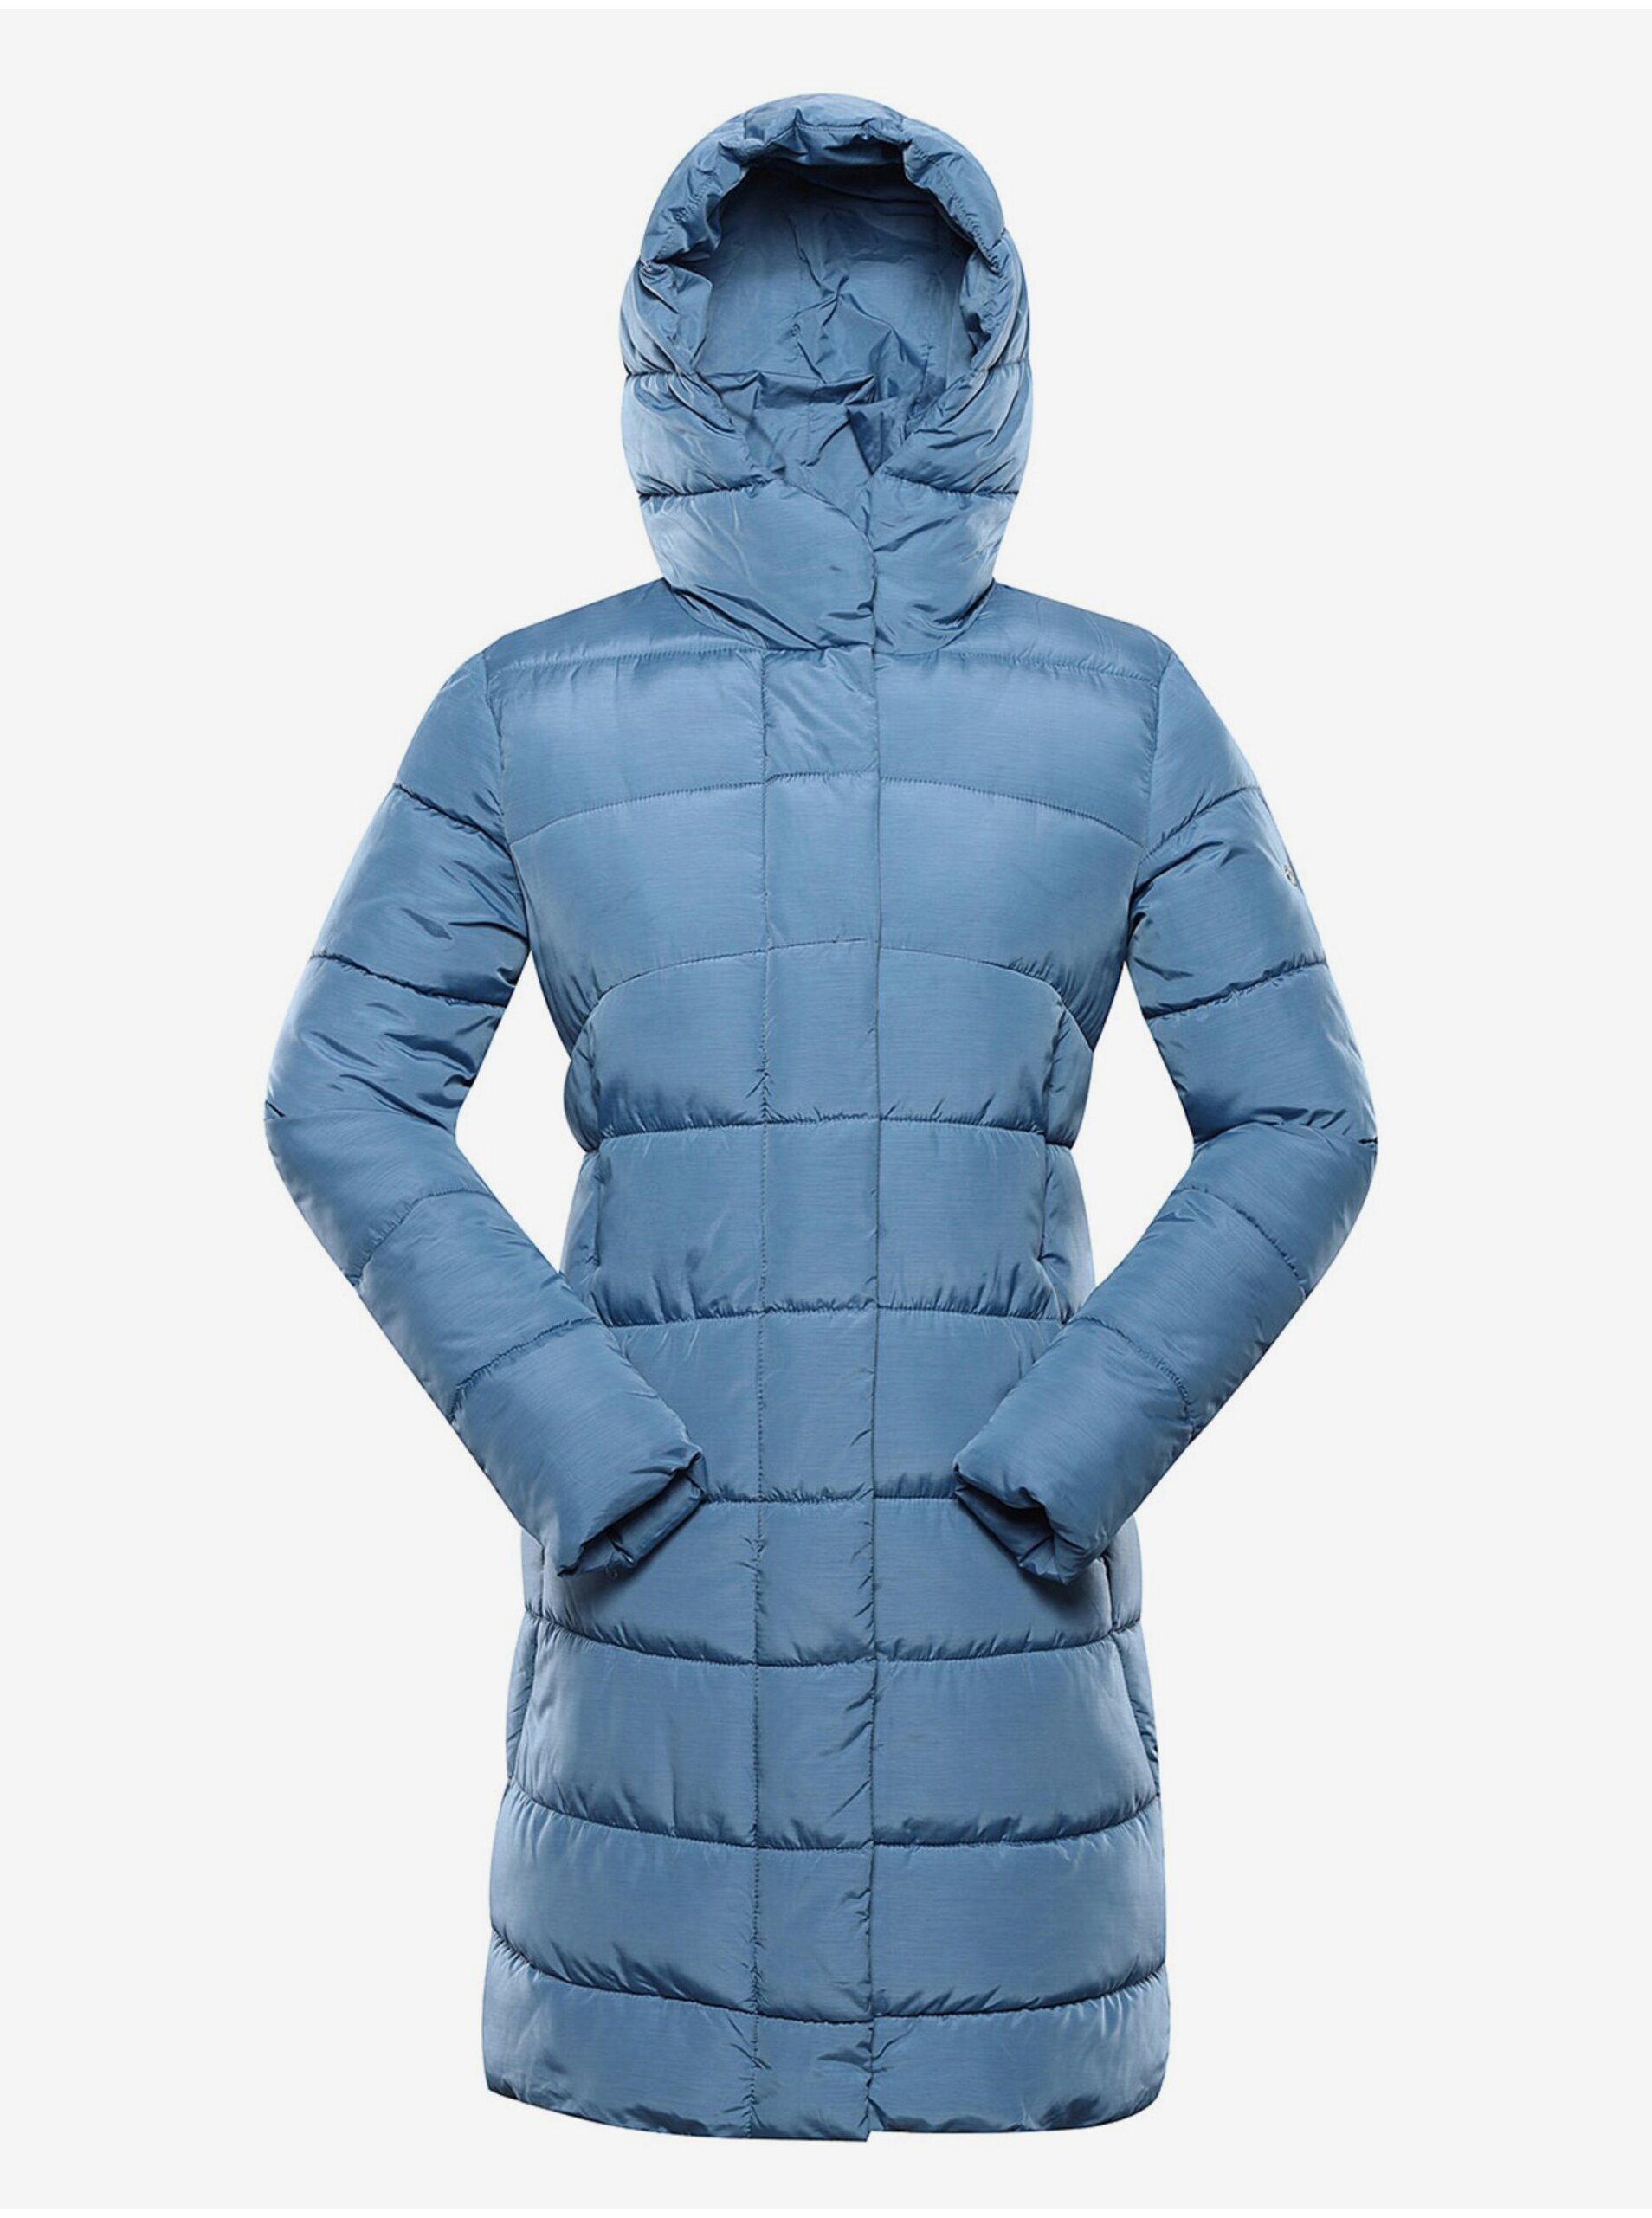 Lacno Modrý dámsky zimný prešívaný kabát ALPINE PRE EDORA